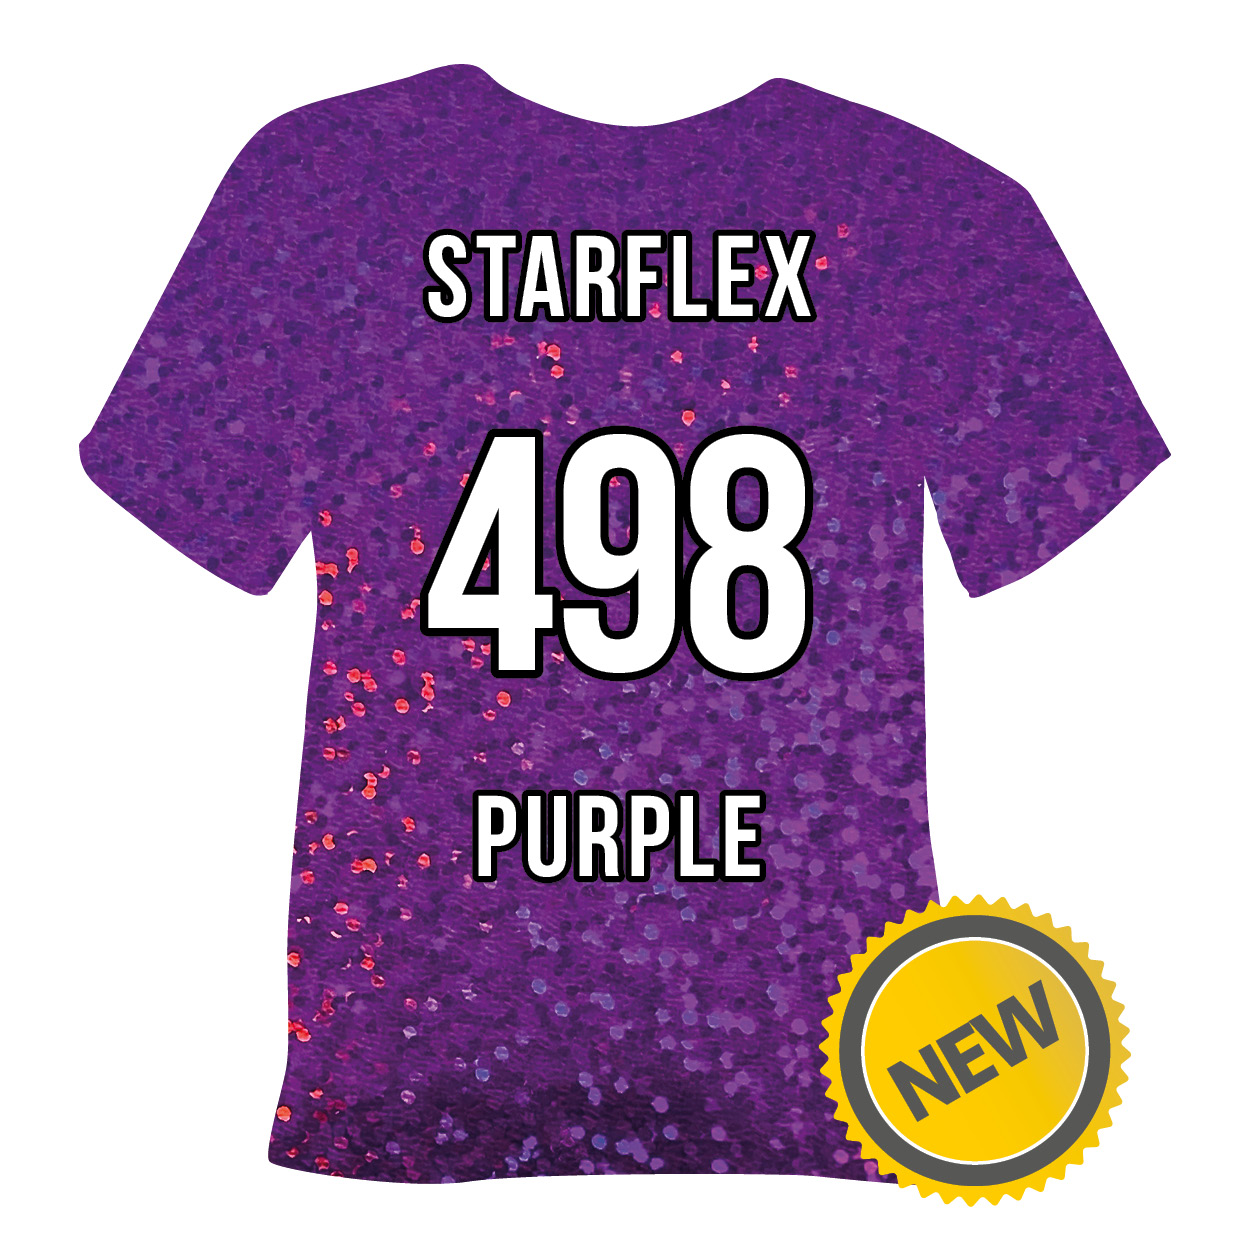 498 Starflex Purple